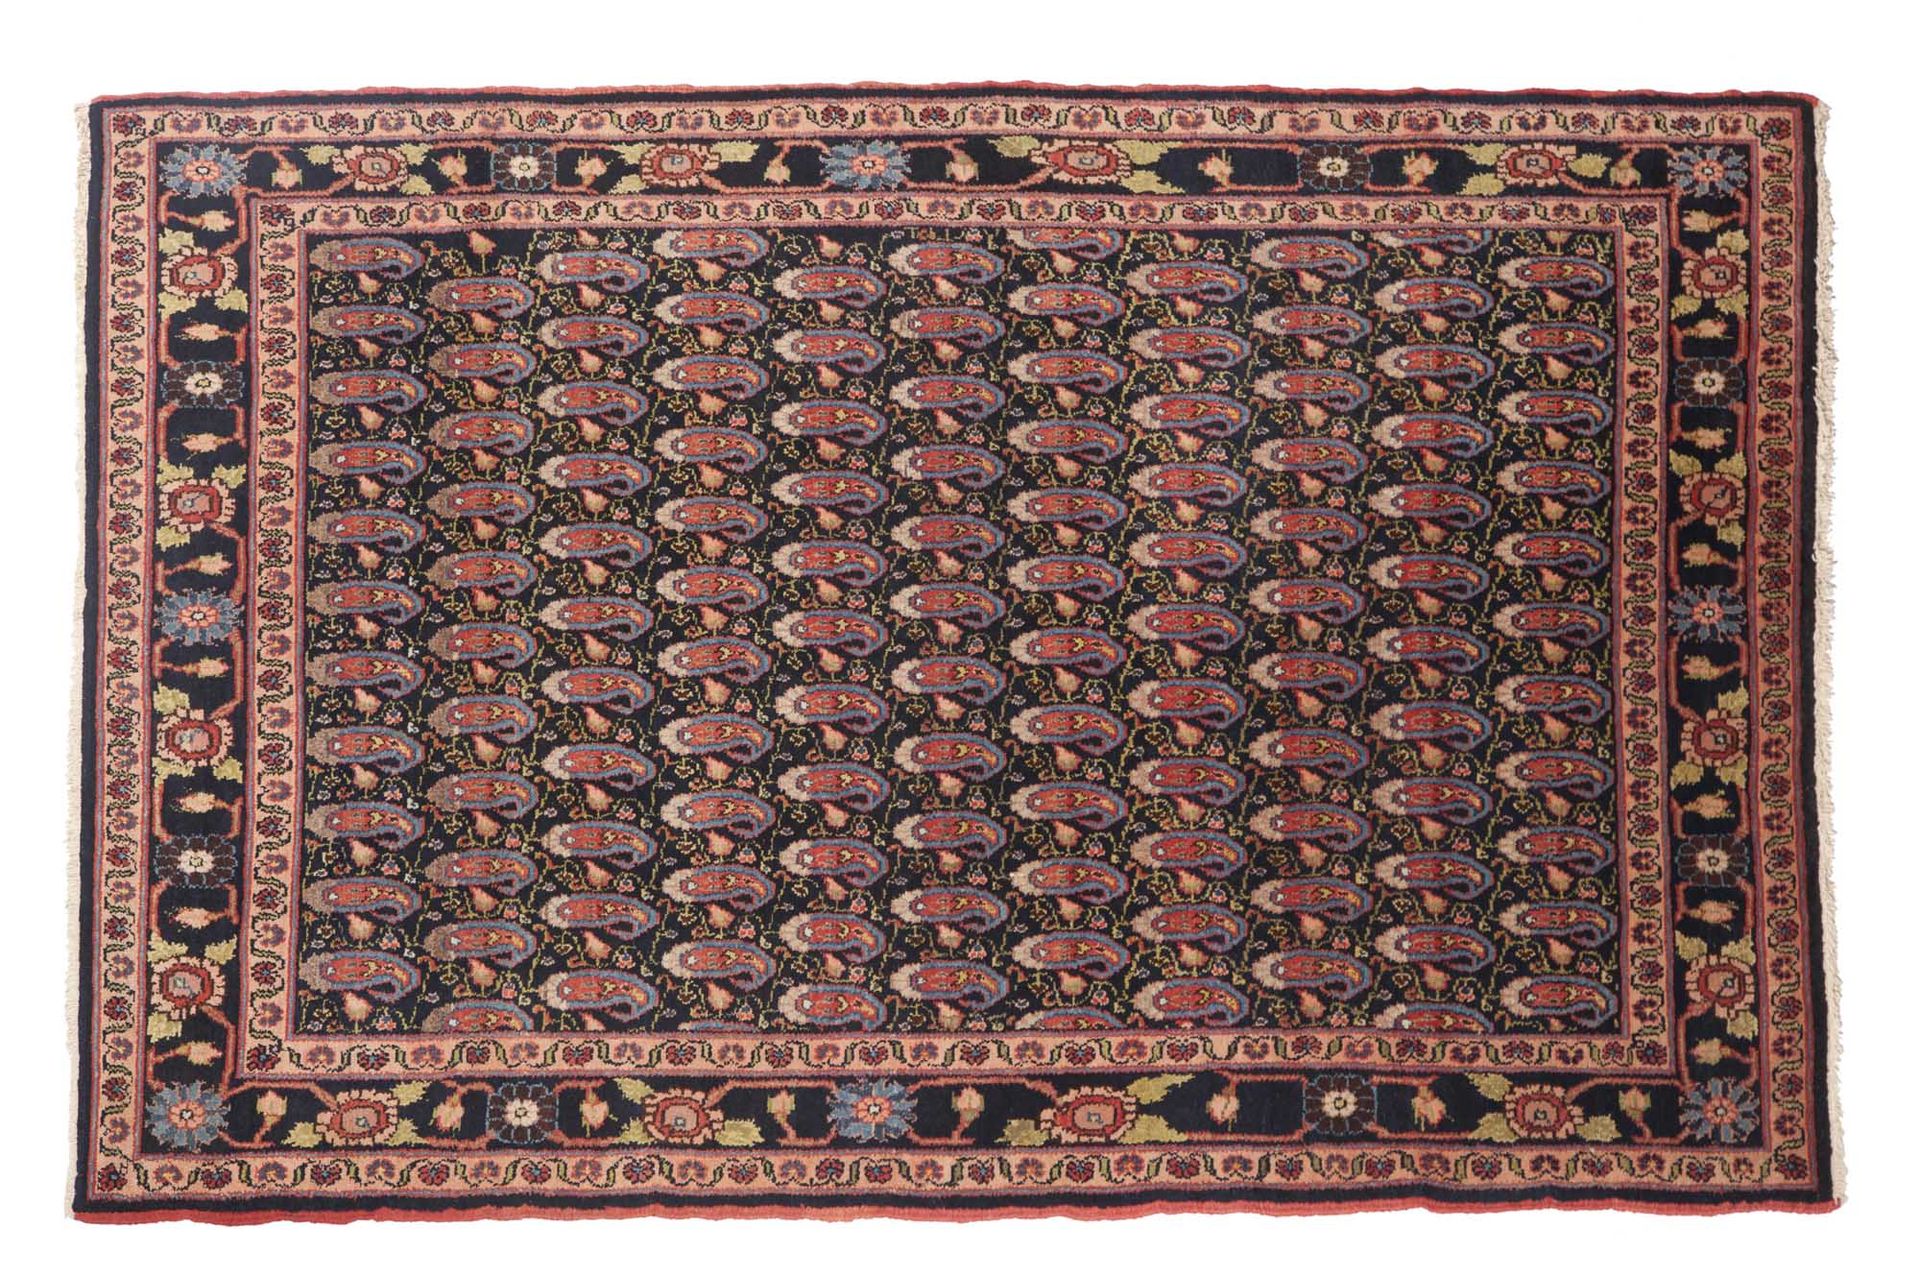 Null Teppich MELAYER (Persien), Mitte des 20. Jahrhunderts.

Maße: 195 x 135cm

&hellip;